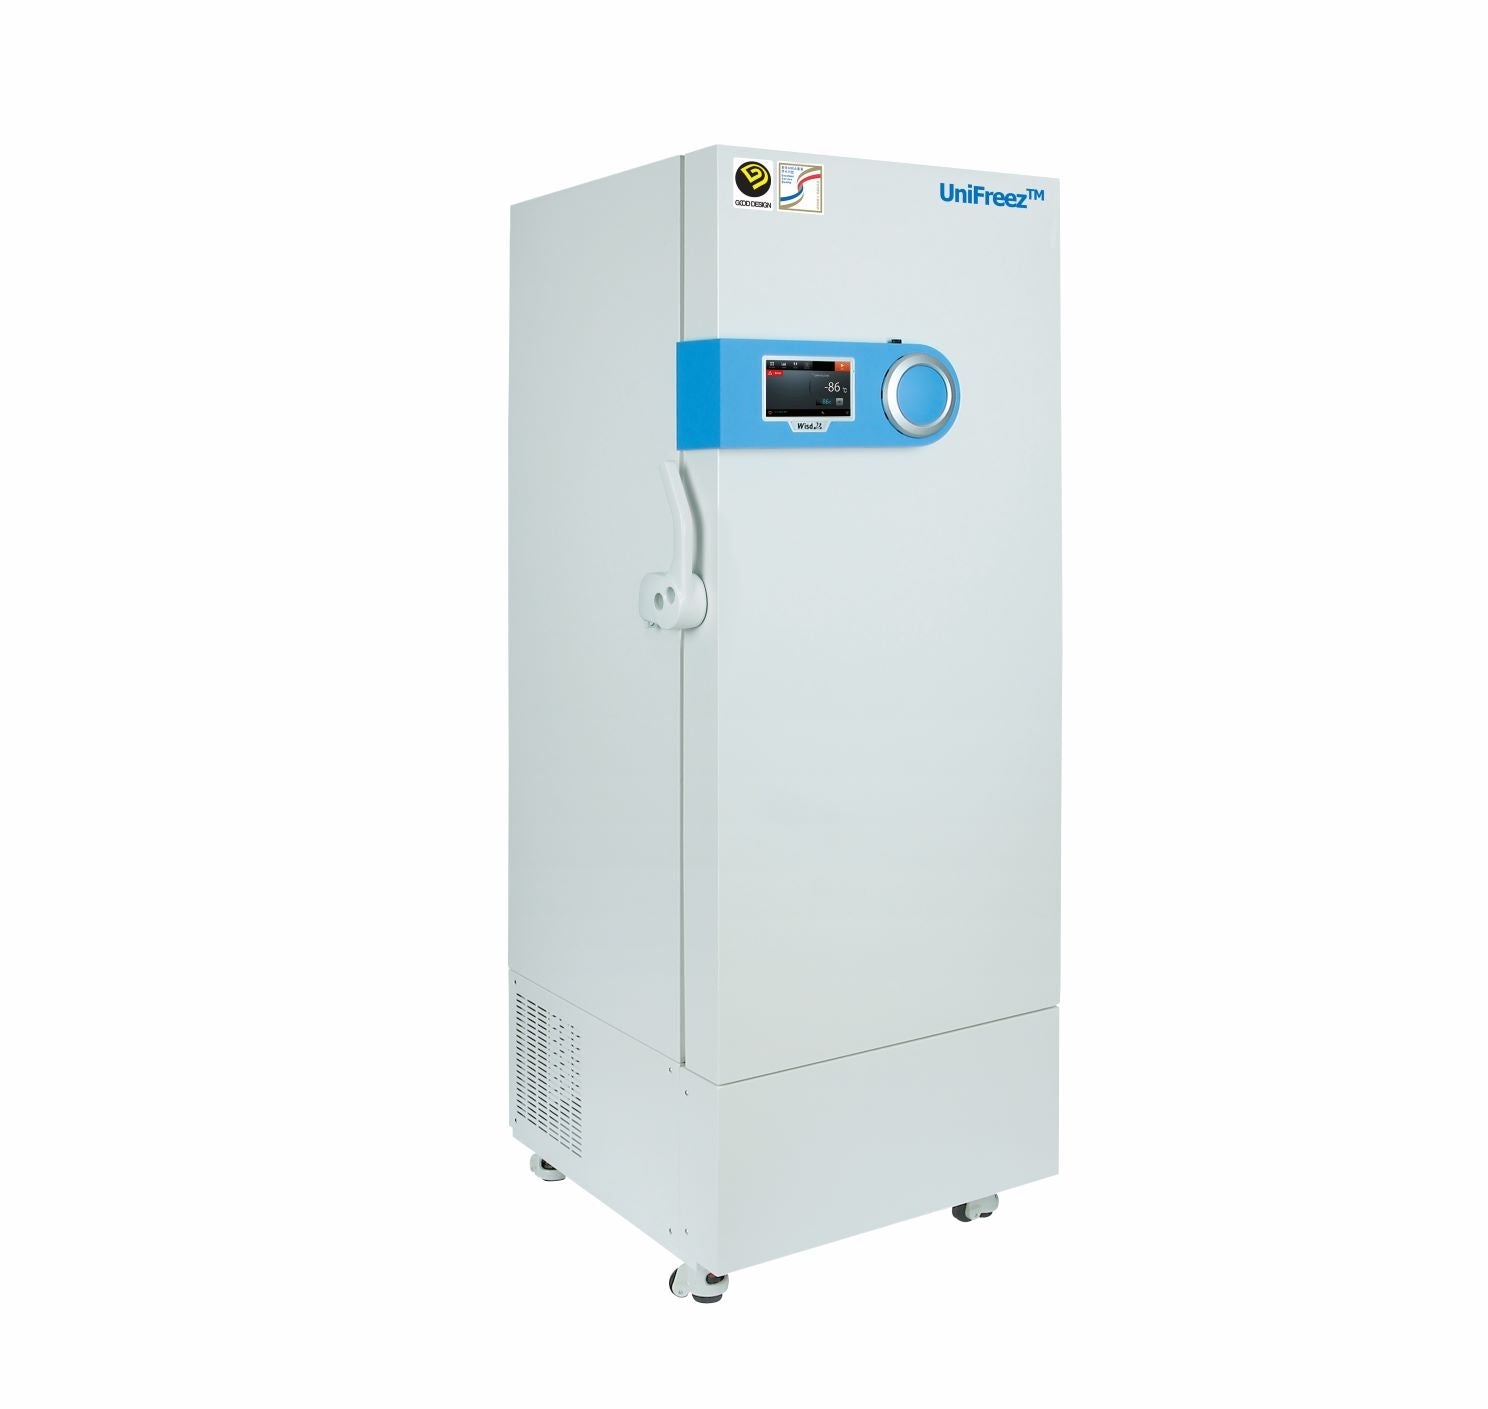 Freezer UniFreez FRE700-96 Smart ULT -86ºC, Upright, 800L, 230V